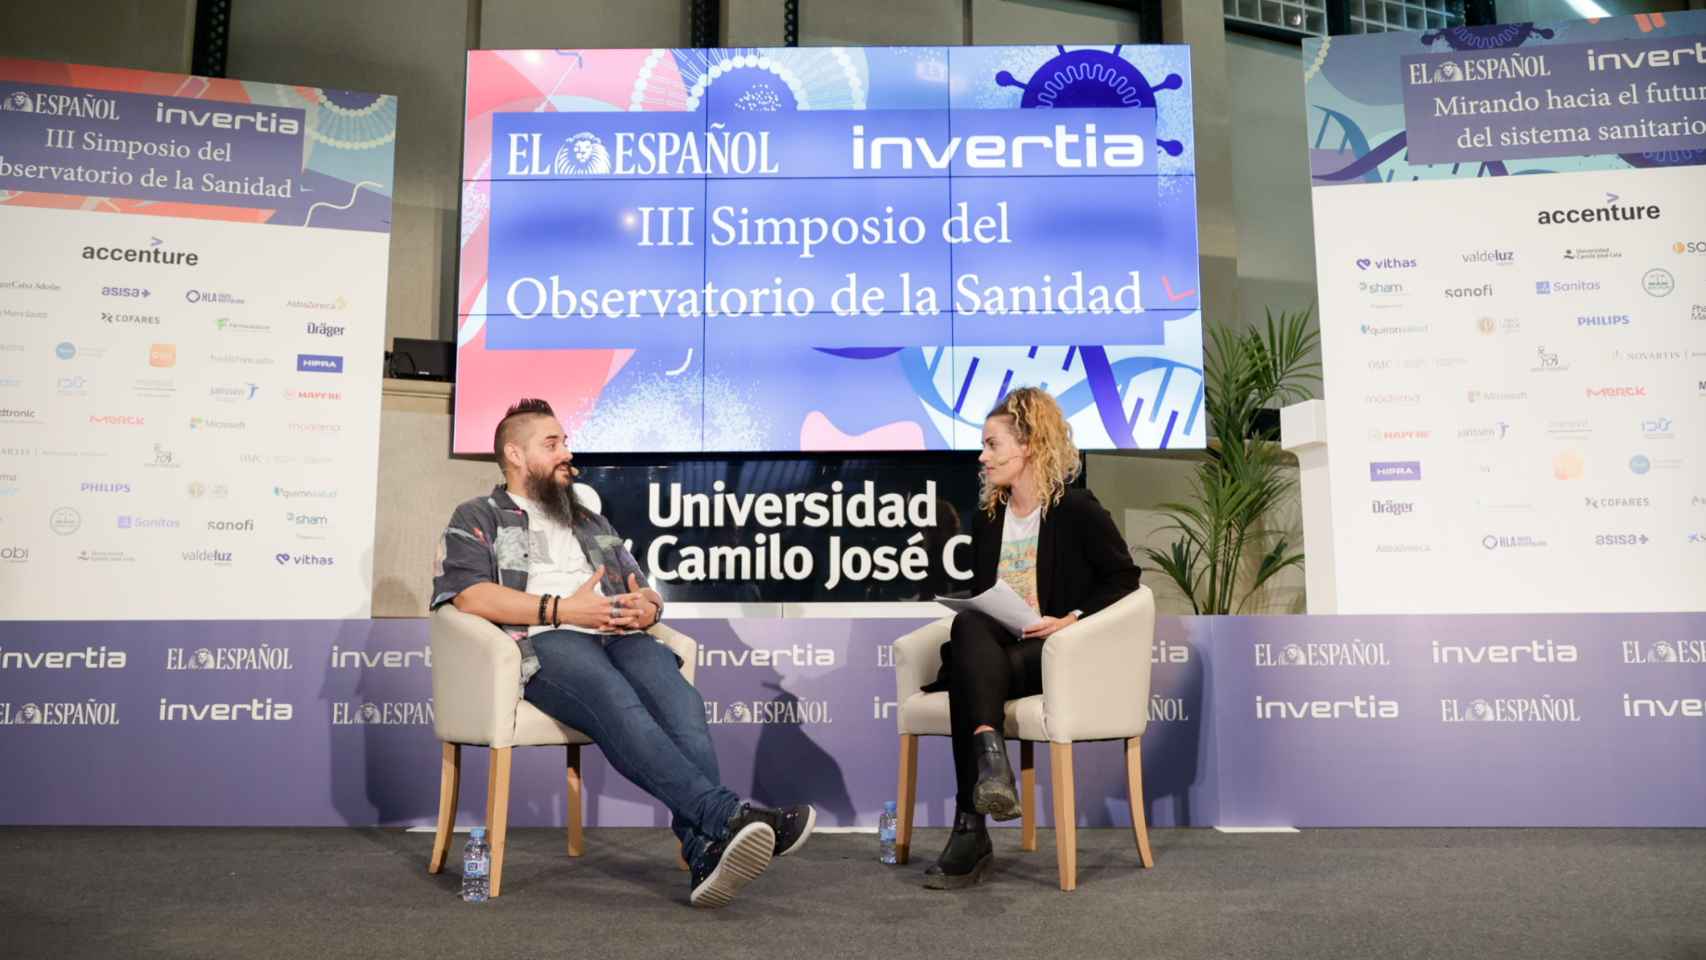 Roberto Romero, Accenture Song Metaverse Continuum Creative Technologist, durante su conversación con Sandra Viñas, redactora de D+I-EL ESPAÑOL, en la tercera jornada del III Simposio del Observatorio de la Sanidad.